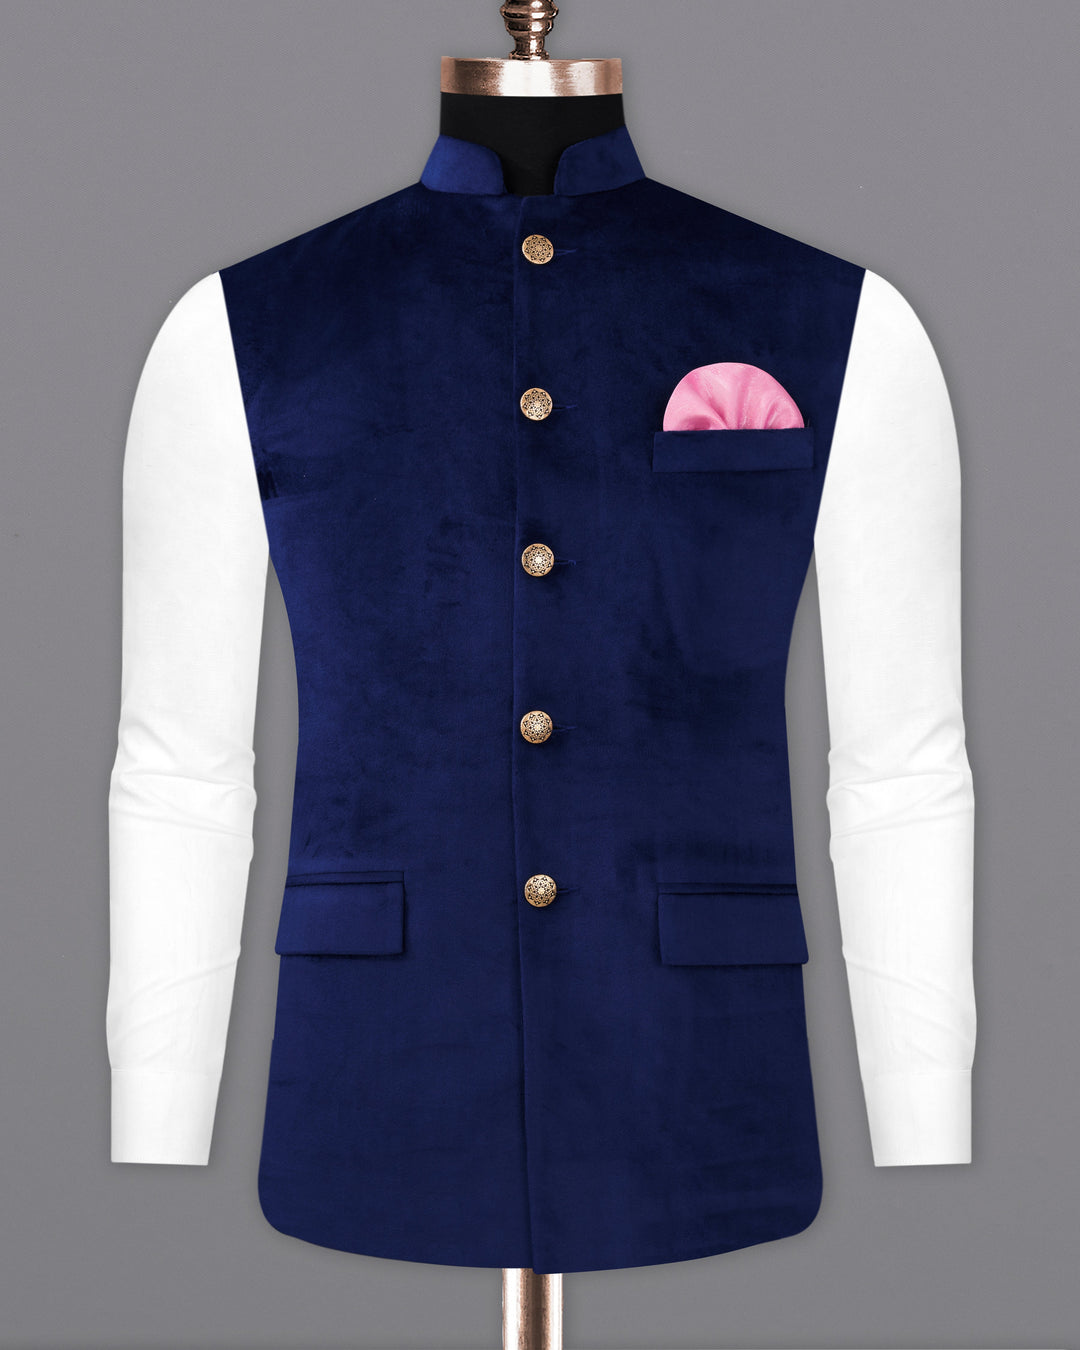 Designer Business Baby Blue Pinstripe Suit Jacket Vest Slim Fit 44